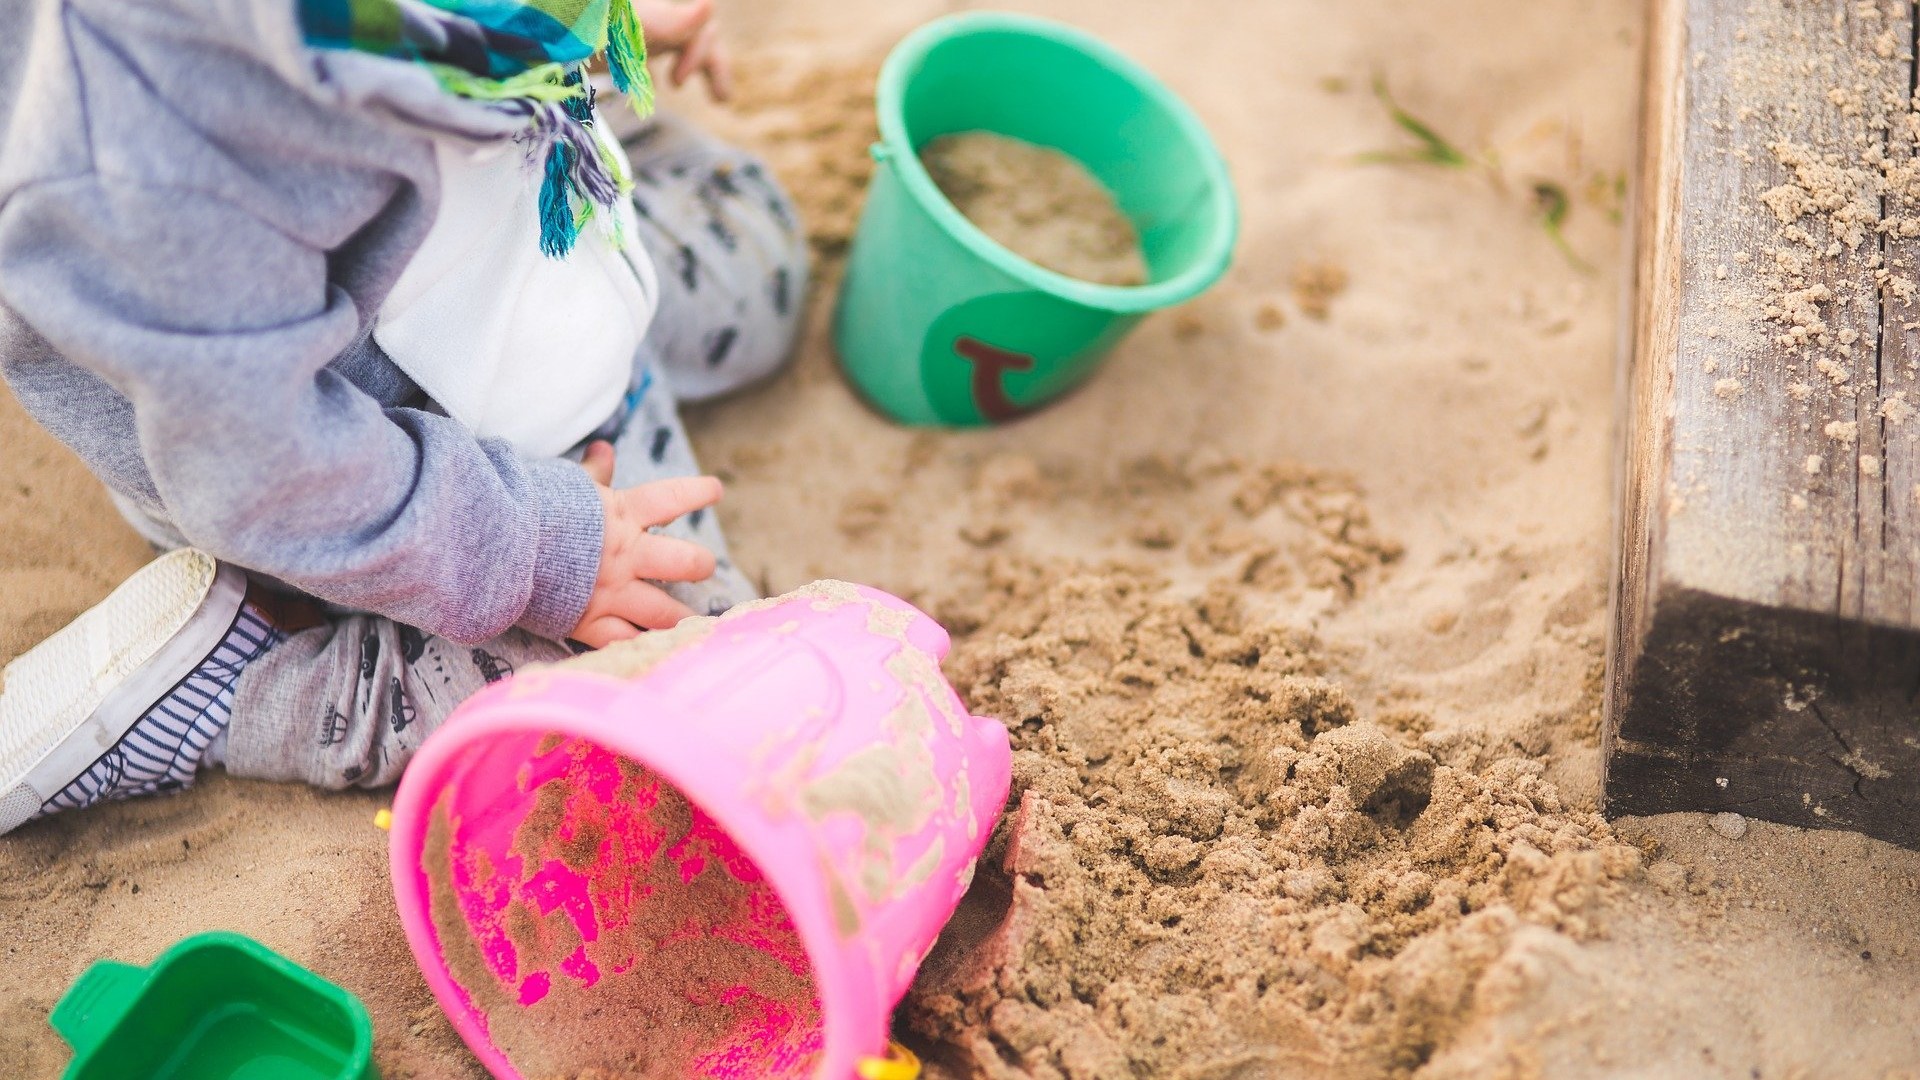 Ein Kind sitzt im Sandkasten und spielt.